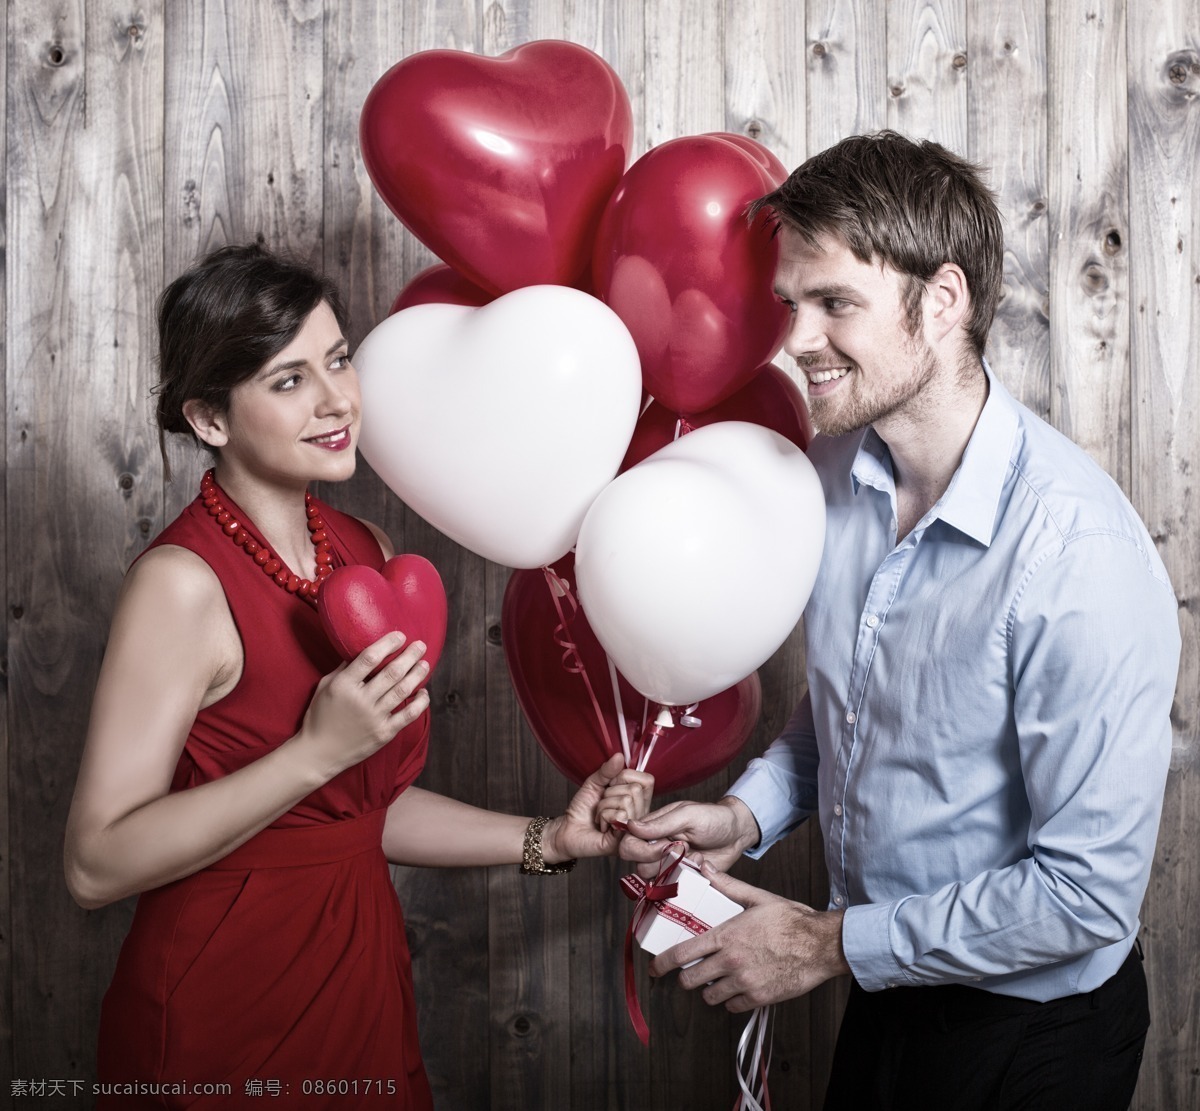 手 心形 气球 情侣 亲密 对视 心形气球 幸福 情侣图片 人物图片